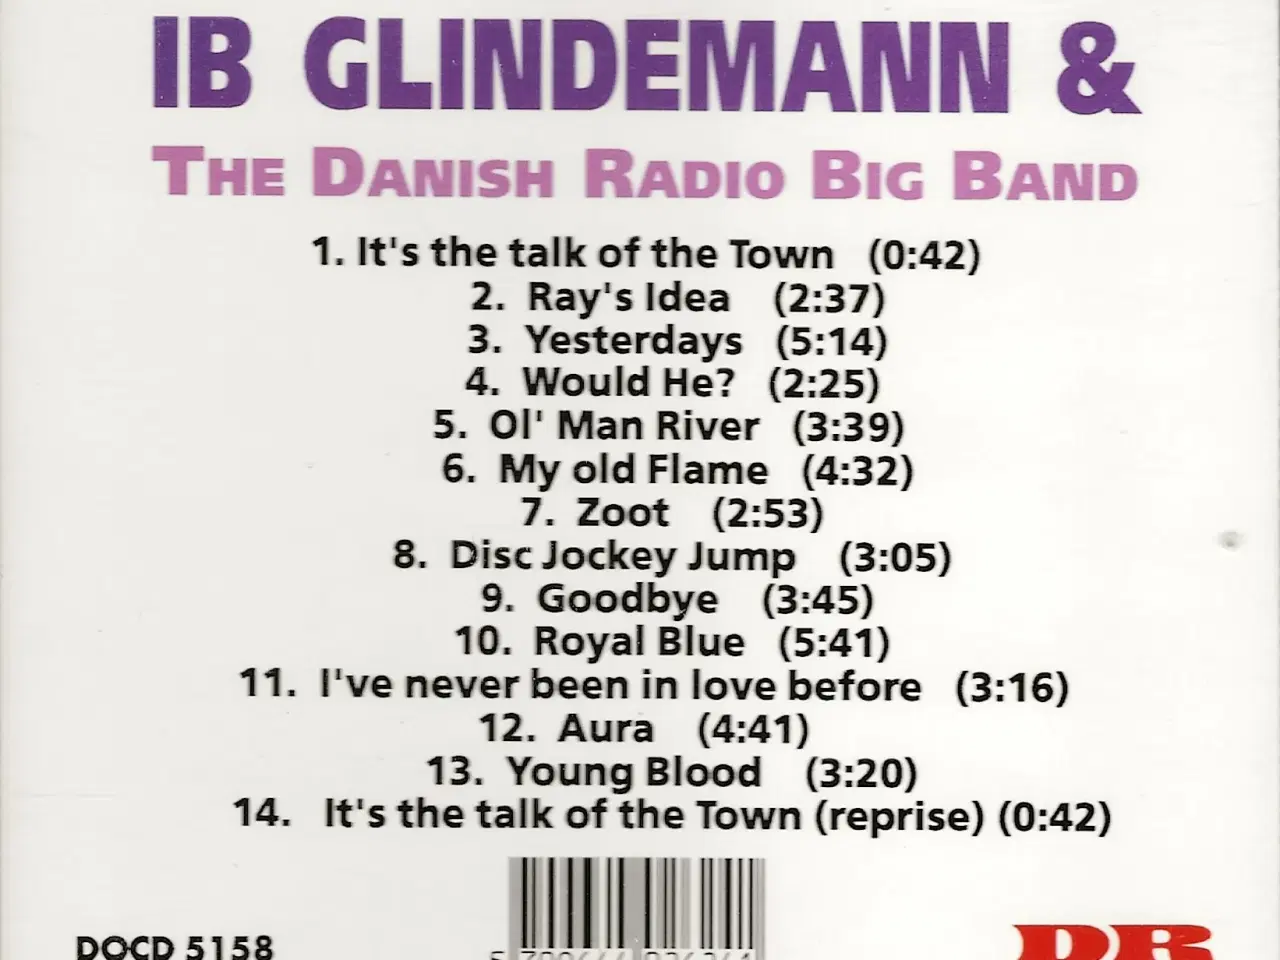 Billede 2 - Ib Glindemann og DR's Big Band. 14 numre,